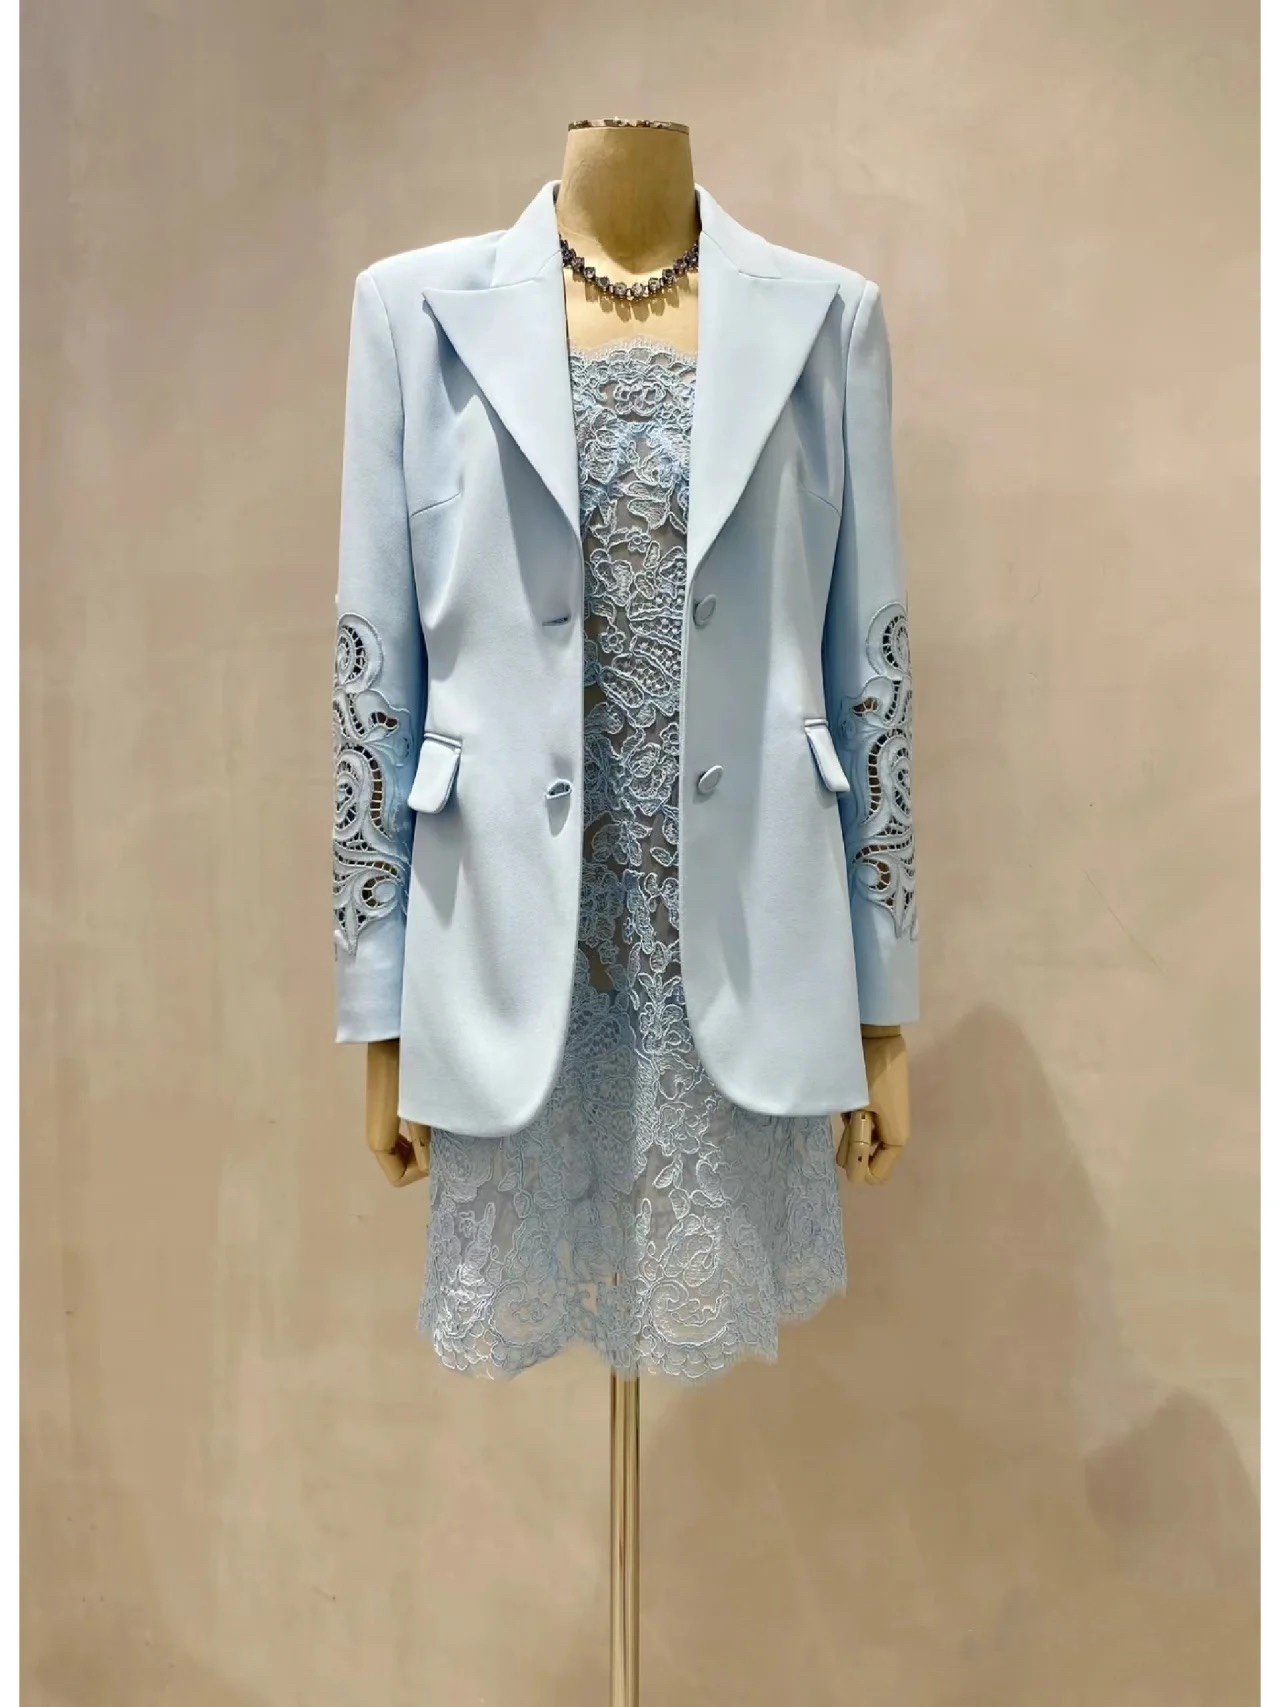 蕾丝大王新品镂空雕绣设计 3⃣️色西装夹克 非市场版本 自然收腰版型 尺码36～38～40